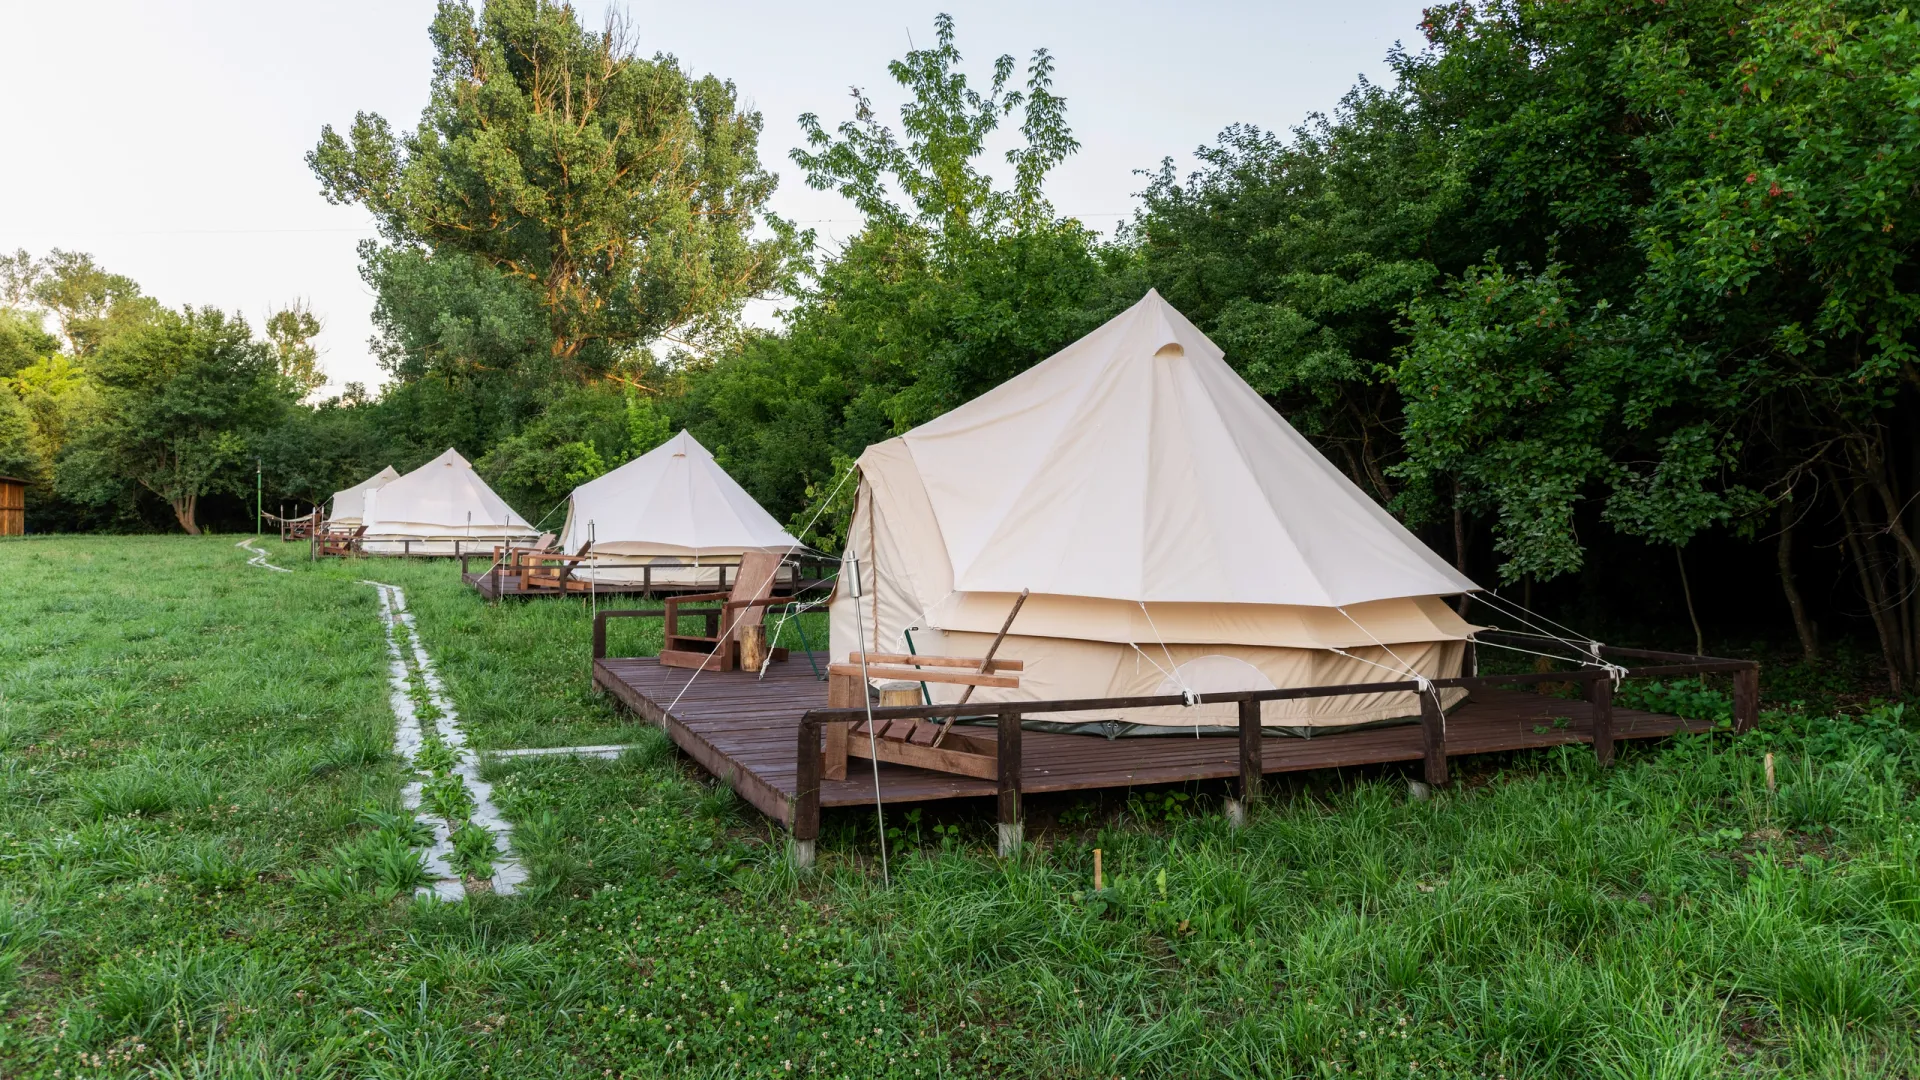 Camping 11 11. Палаточный туризм. Шатер Базарный. Загородный отдых предметы. Проект глэмпинга.